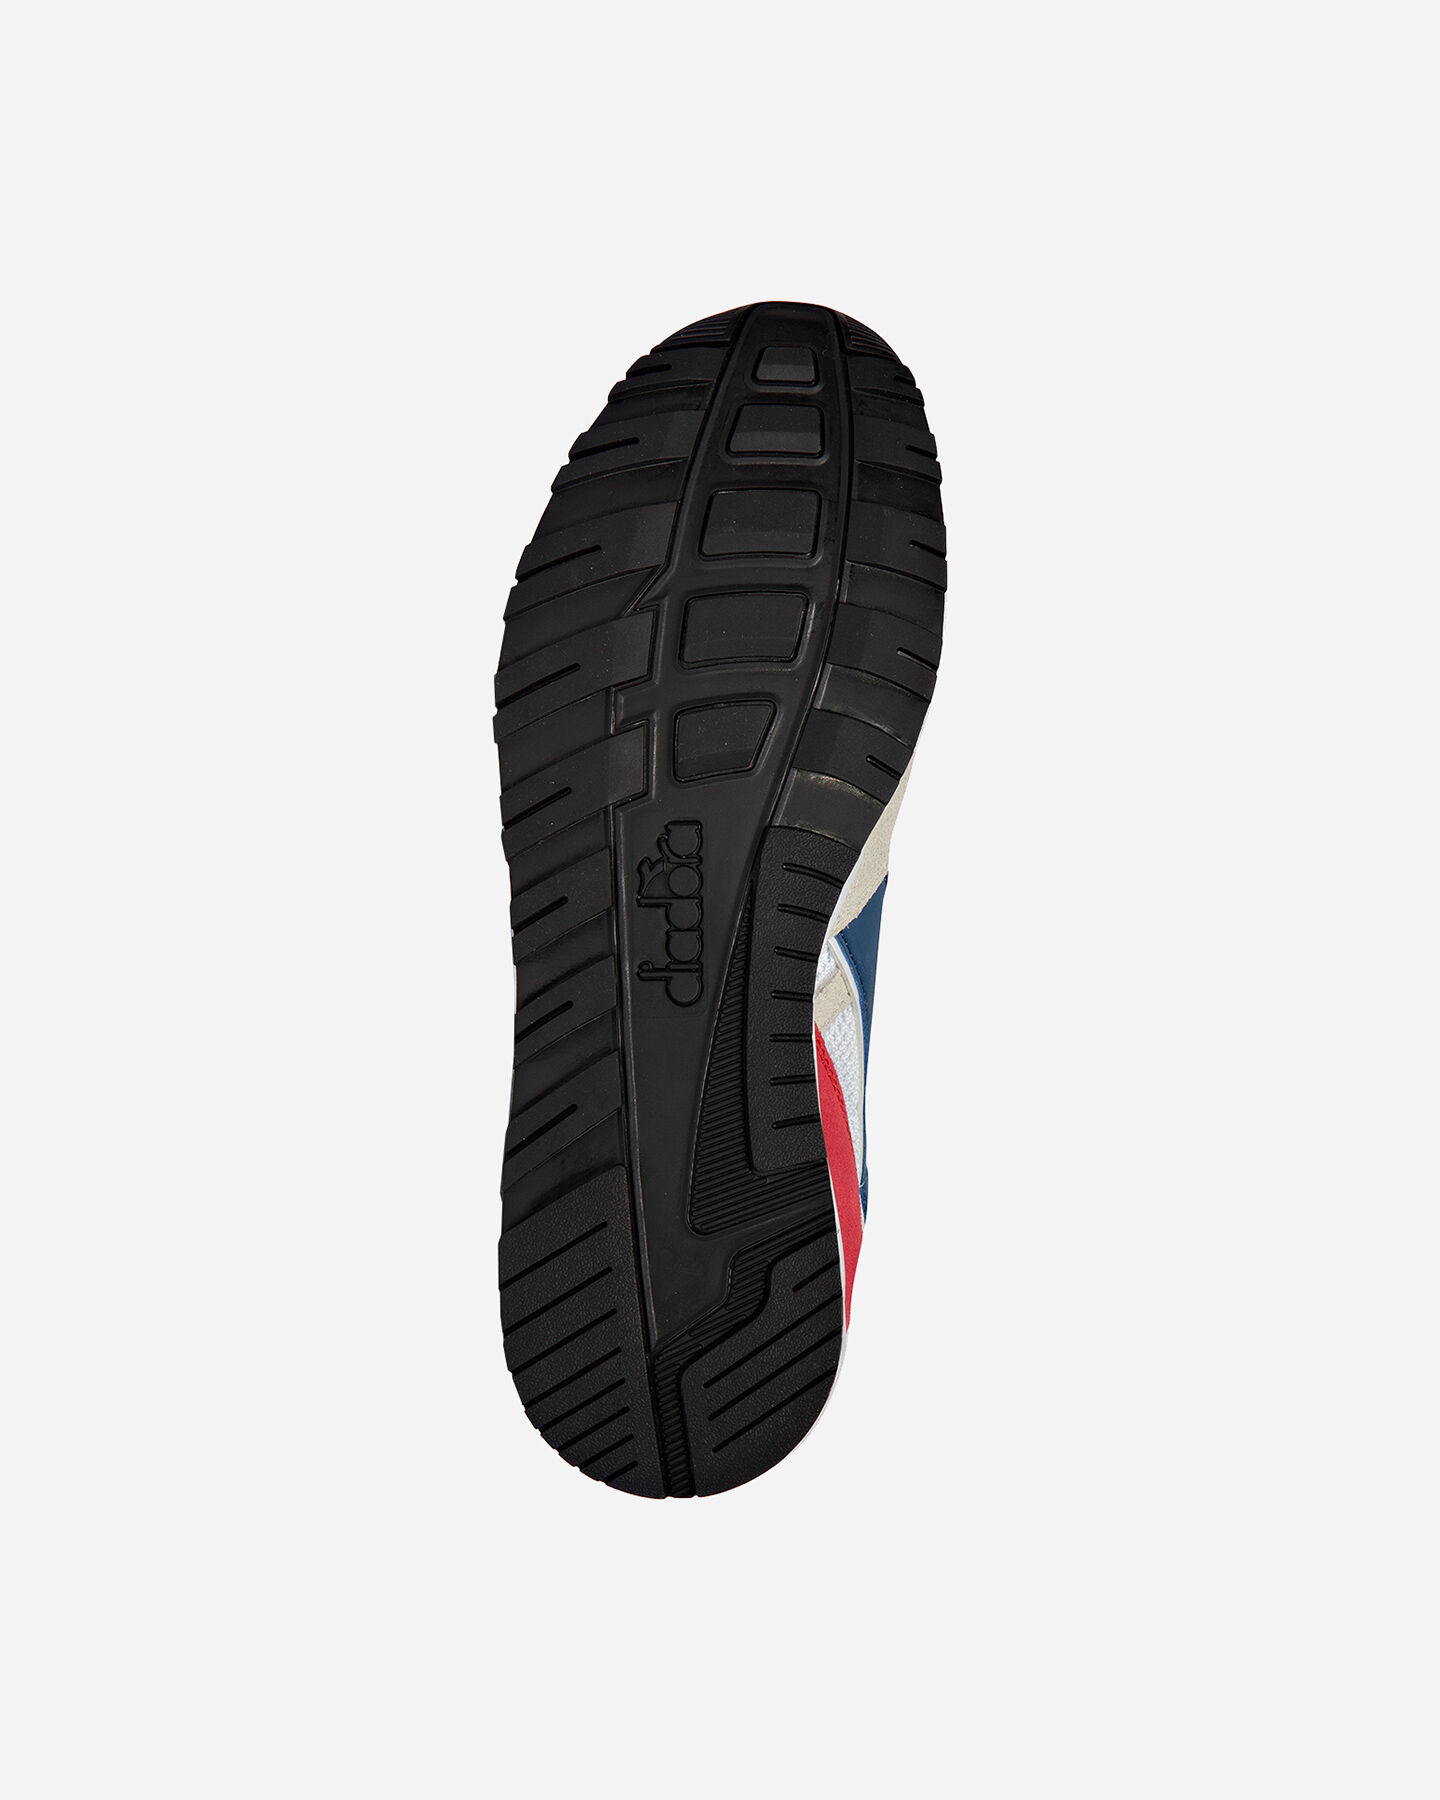  Scarpe sneakers DIADORA N902 S M S5171126|C8465|3- scatto 2